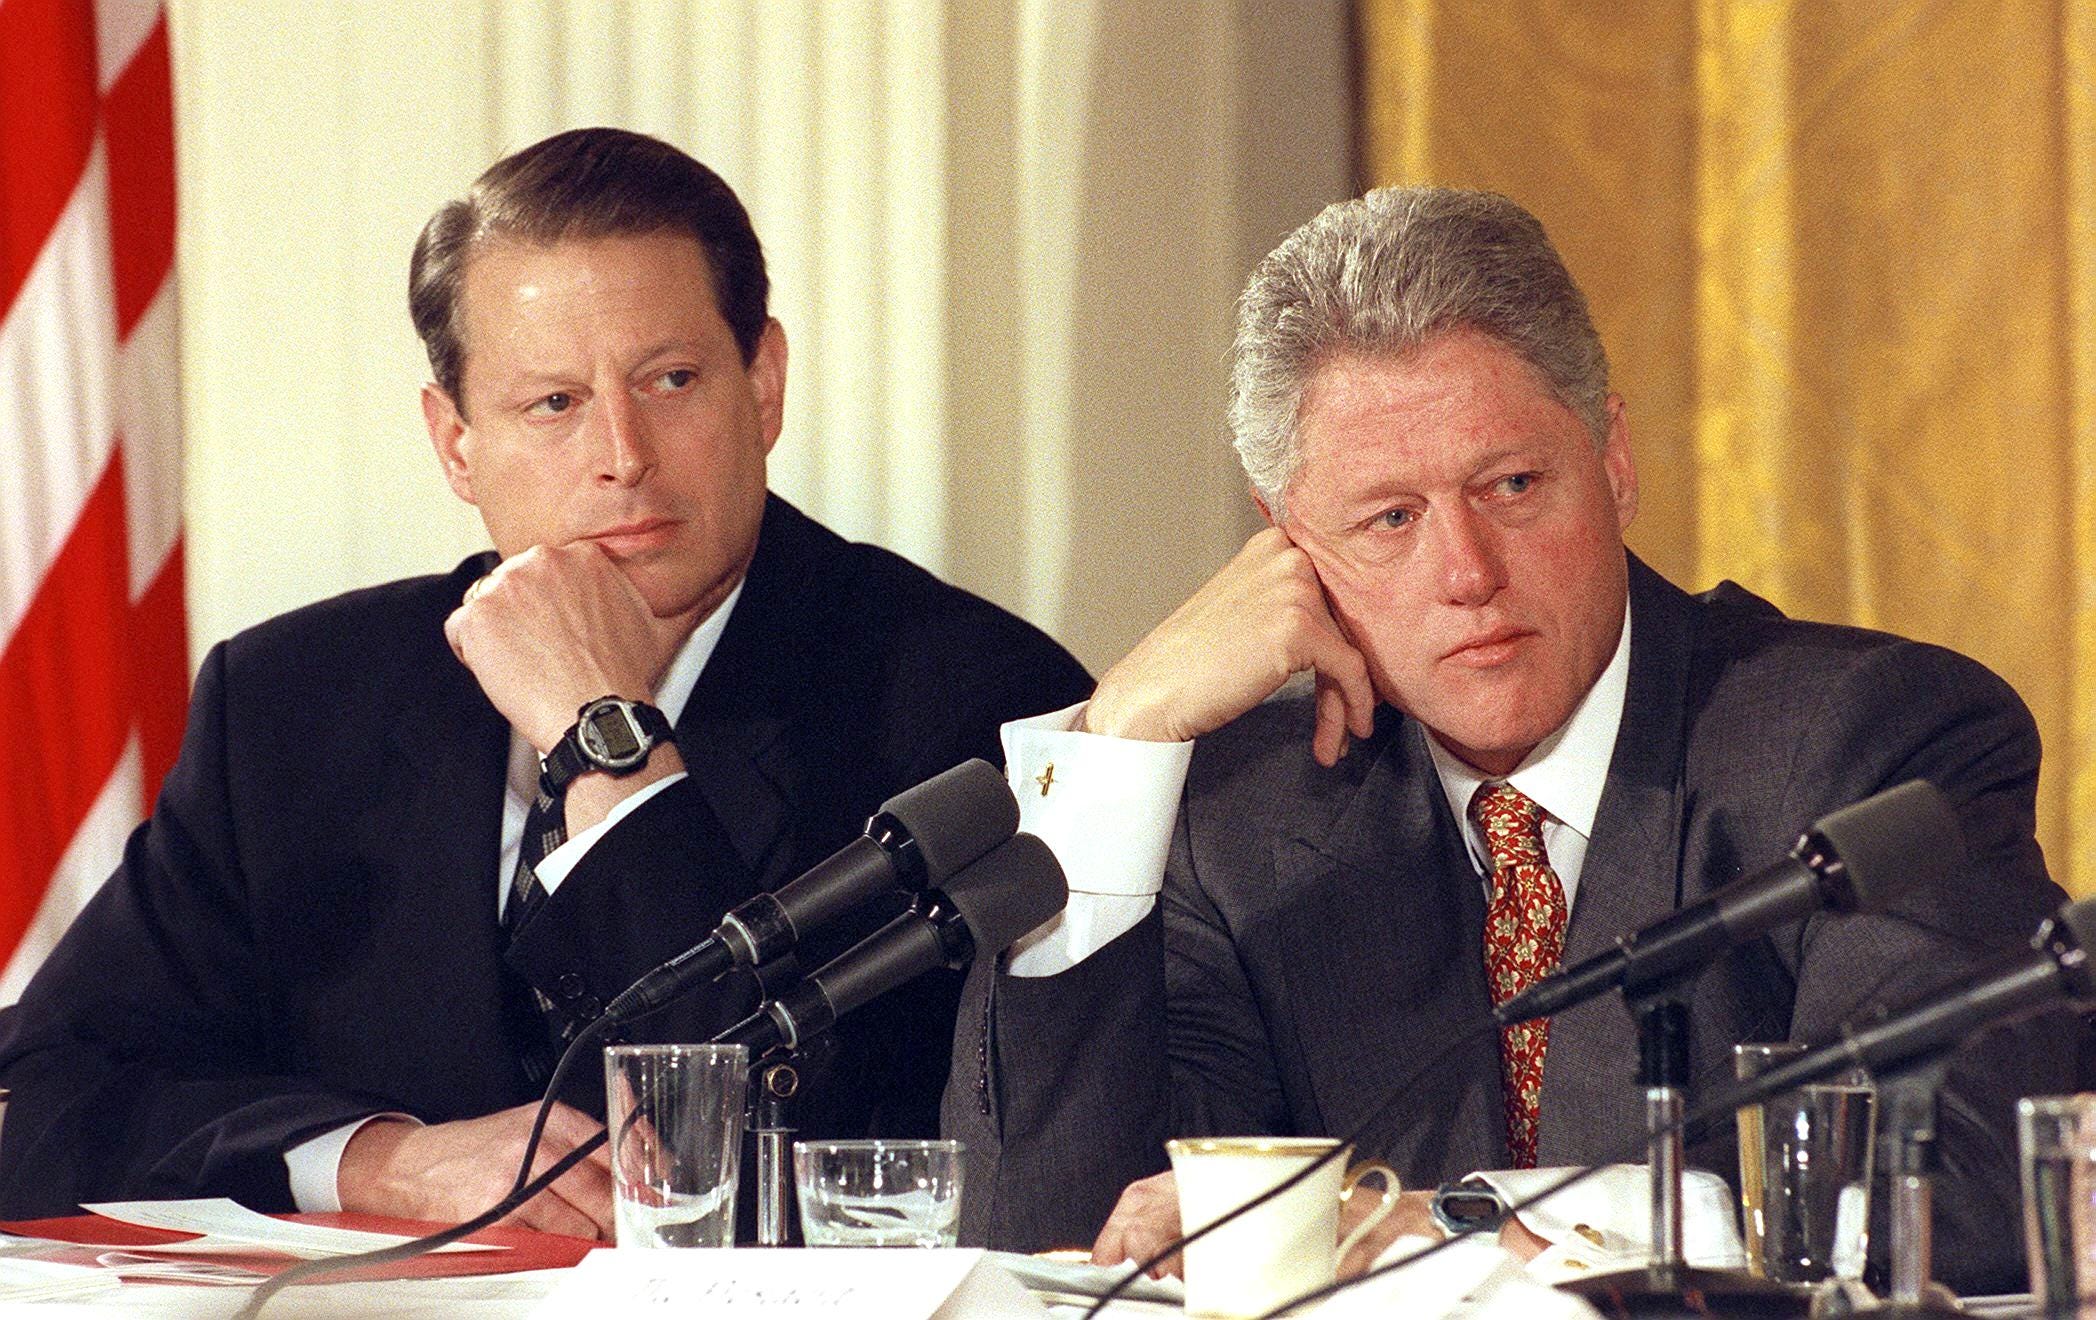 Präsident Bill Clinton und Vizepräsident Al Gore im Jahr 1999